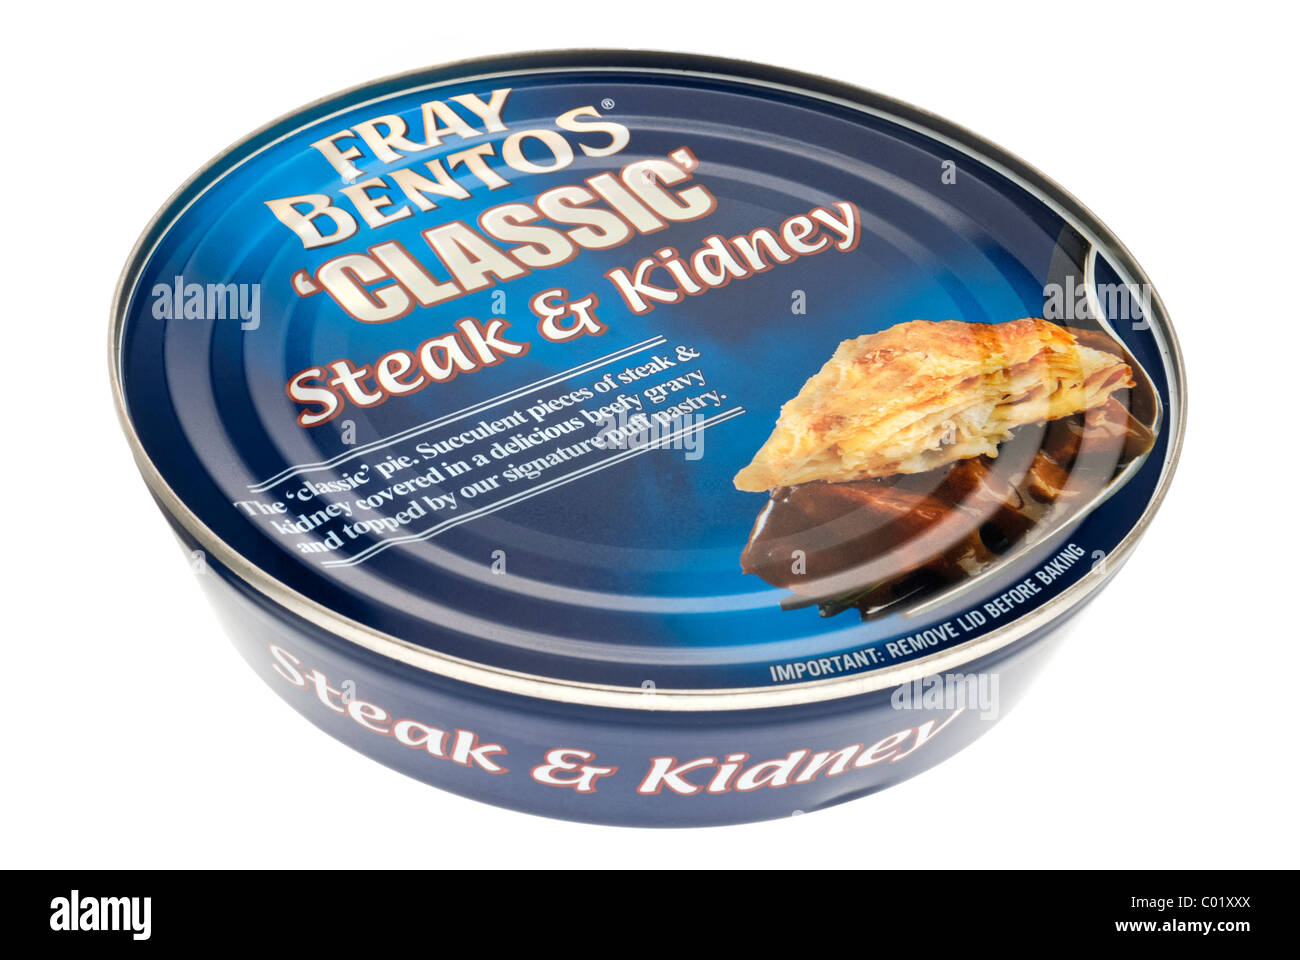 https://c8.alamy.com/comp/C01XXX/fray-bentos-classic-steak-kidney-pie-C01XXX.jpg